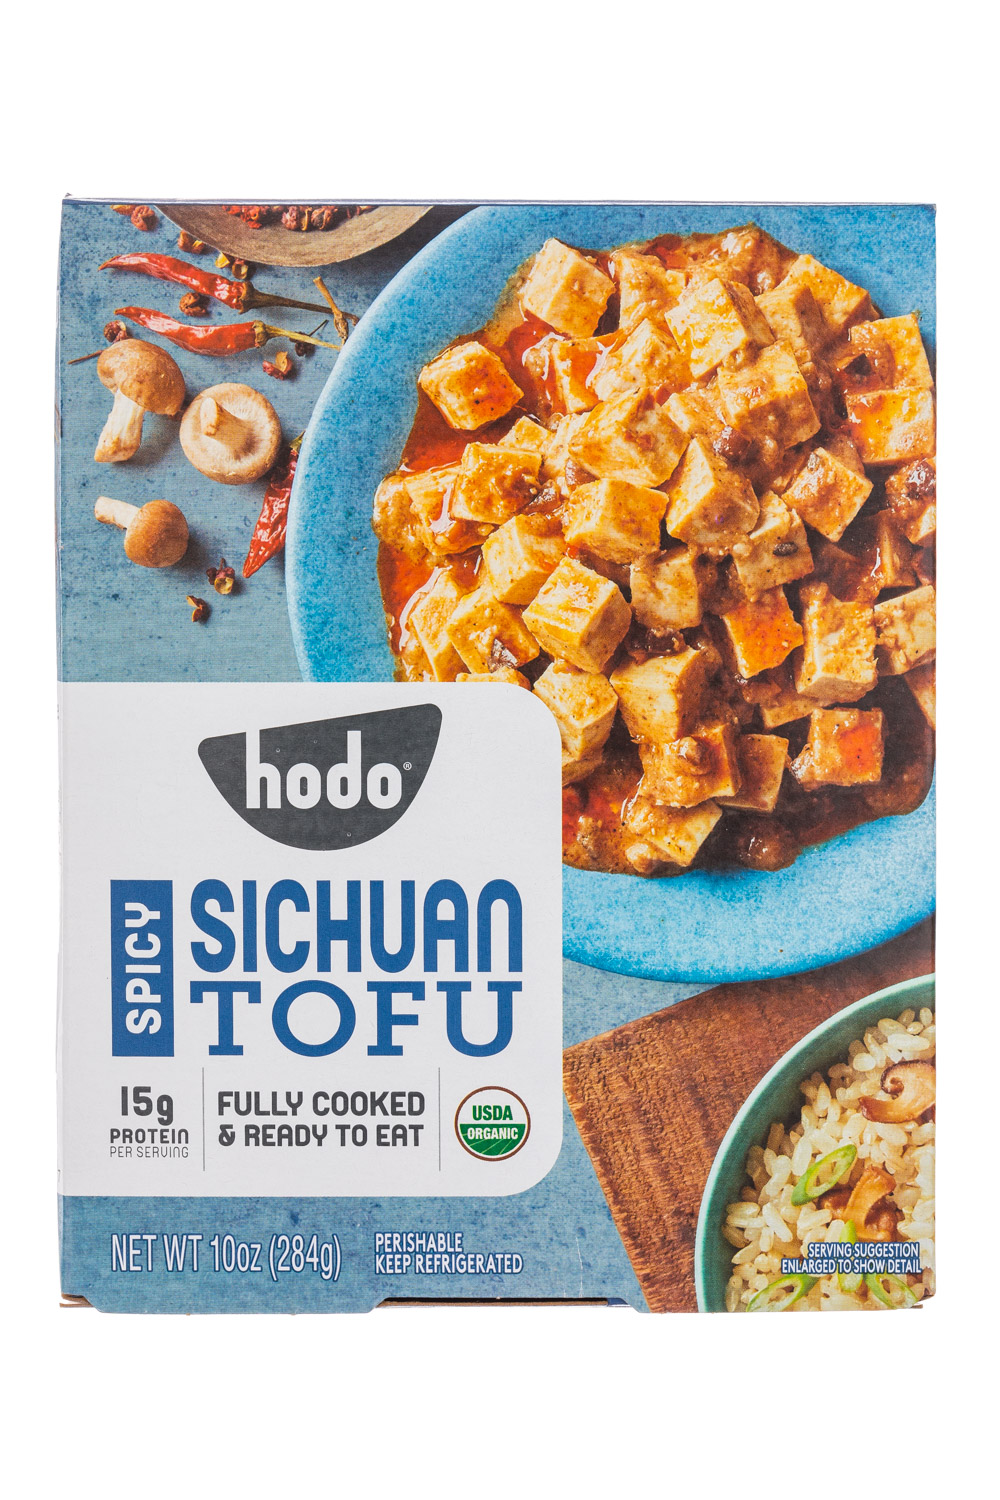 Spicy Sichuan Tofu